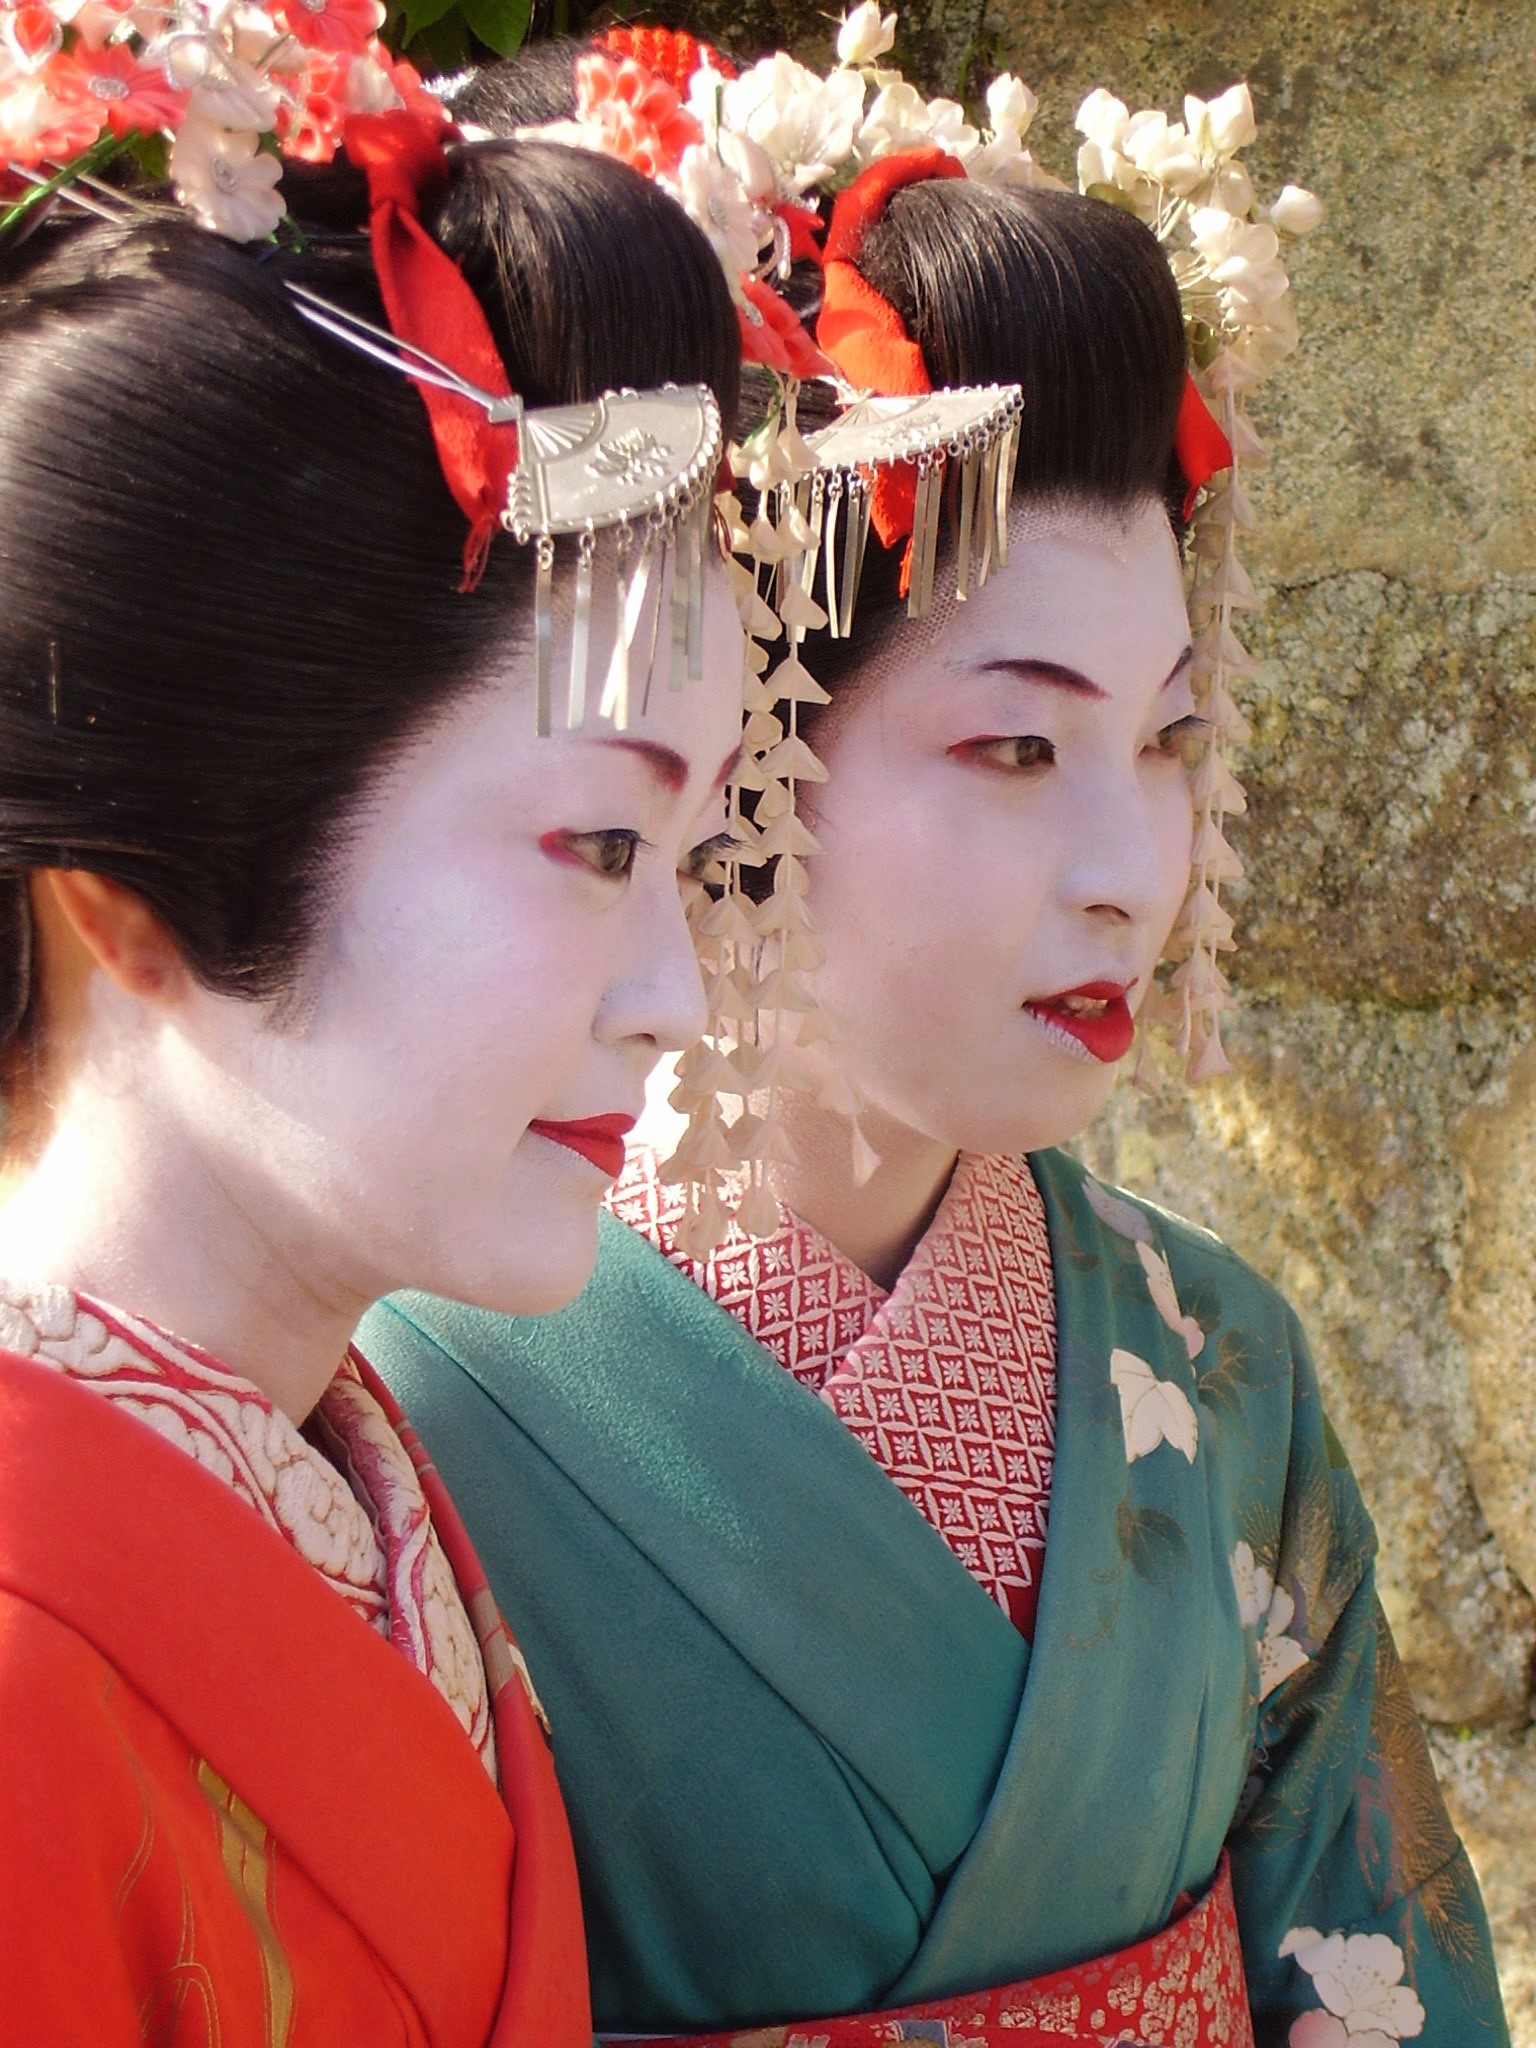 W Gion gejsze określane są mianem “geiko” – “kobieta sztuki